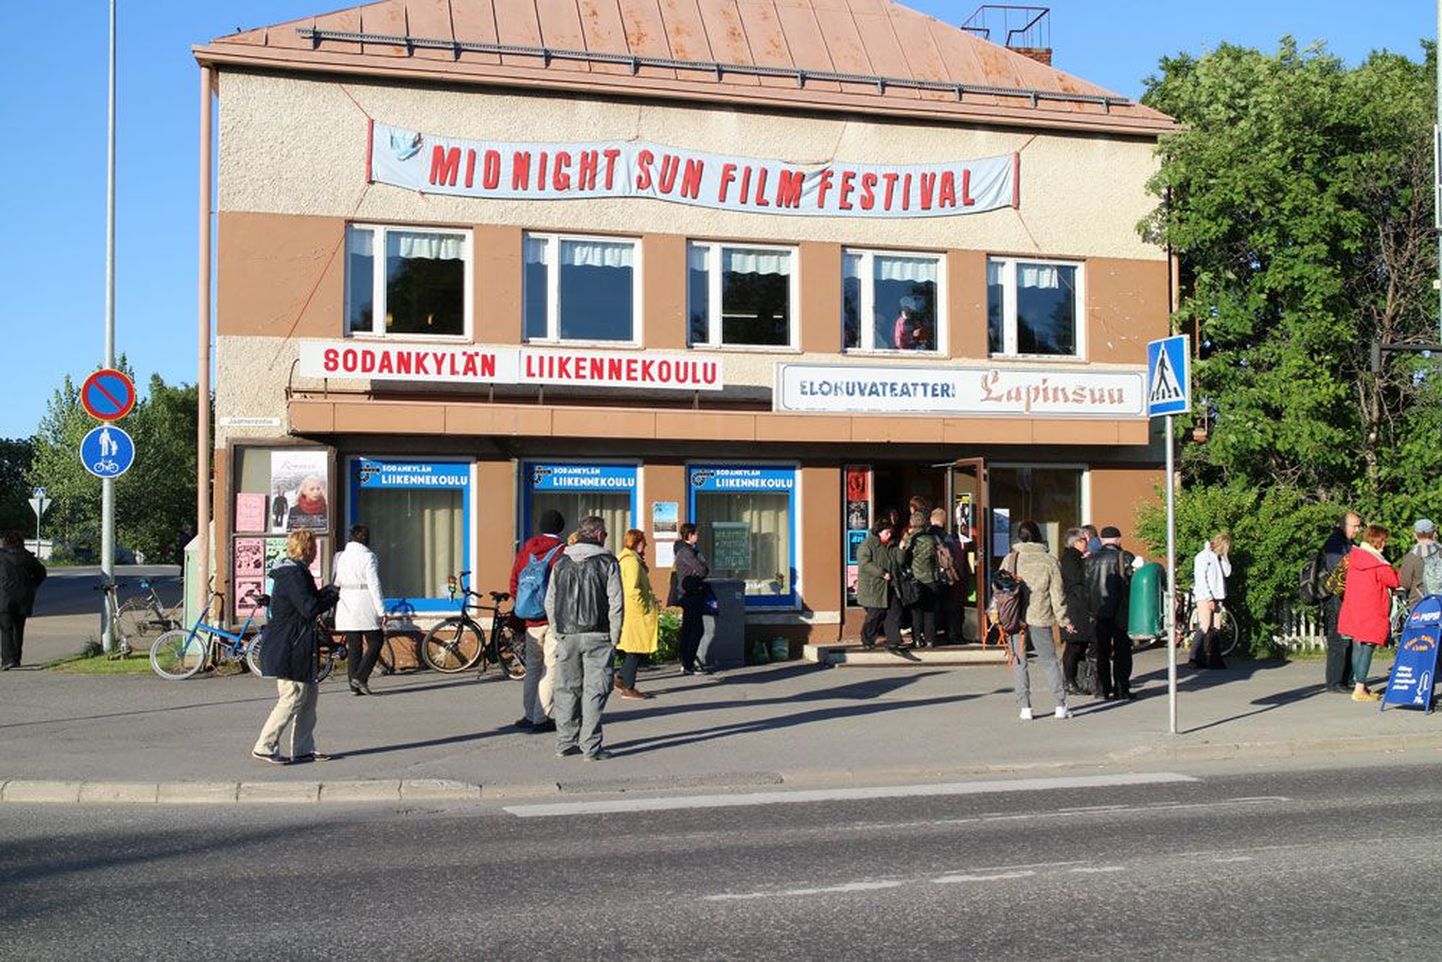 Lapinsuu kinos on Sodankylä festivali üks neljast suurest ekraanist.